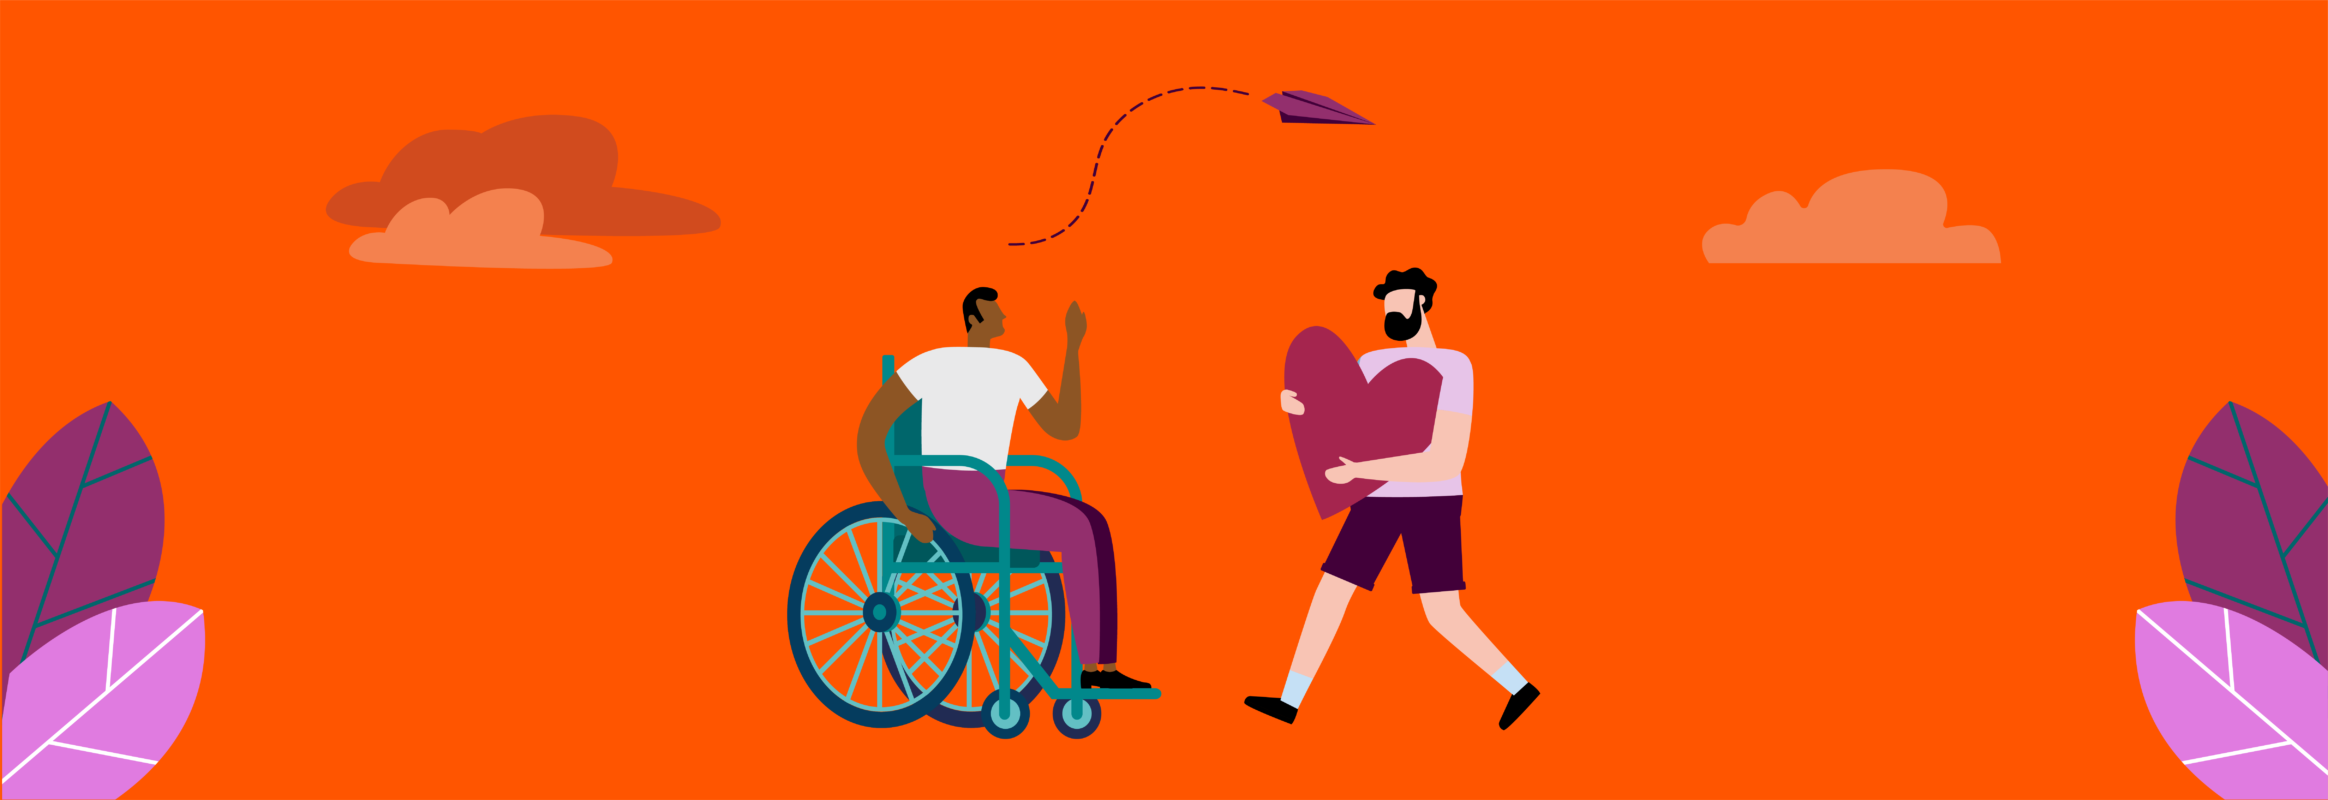 Ilustración de dos personas enfrentándose. Uno en silla de ruedas, el otro de pie con un corazón grande en la mano.